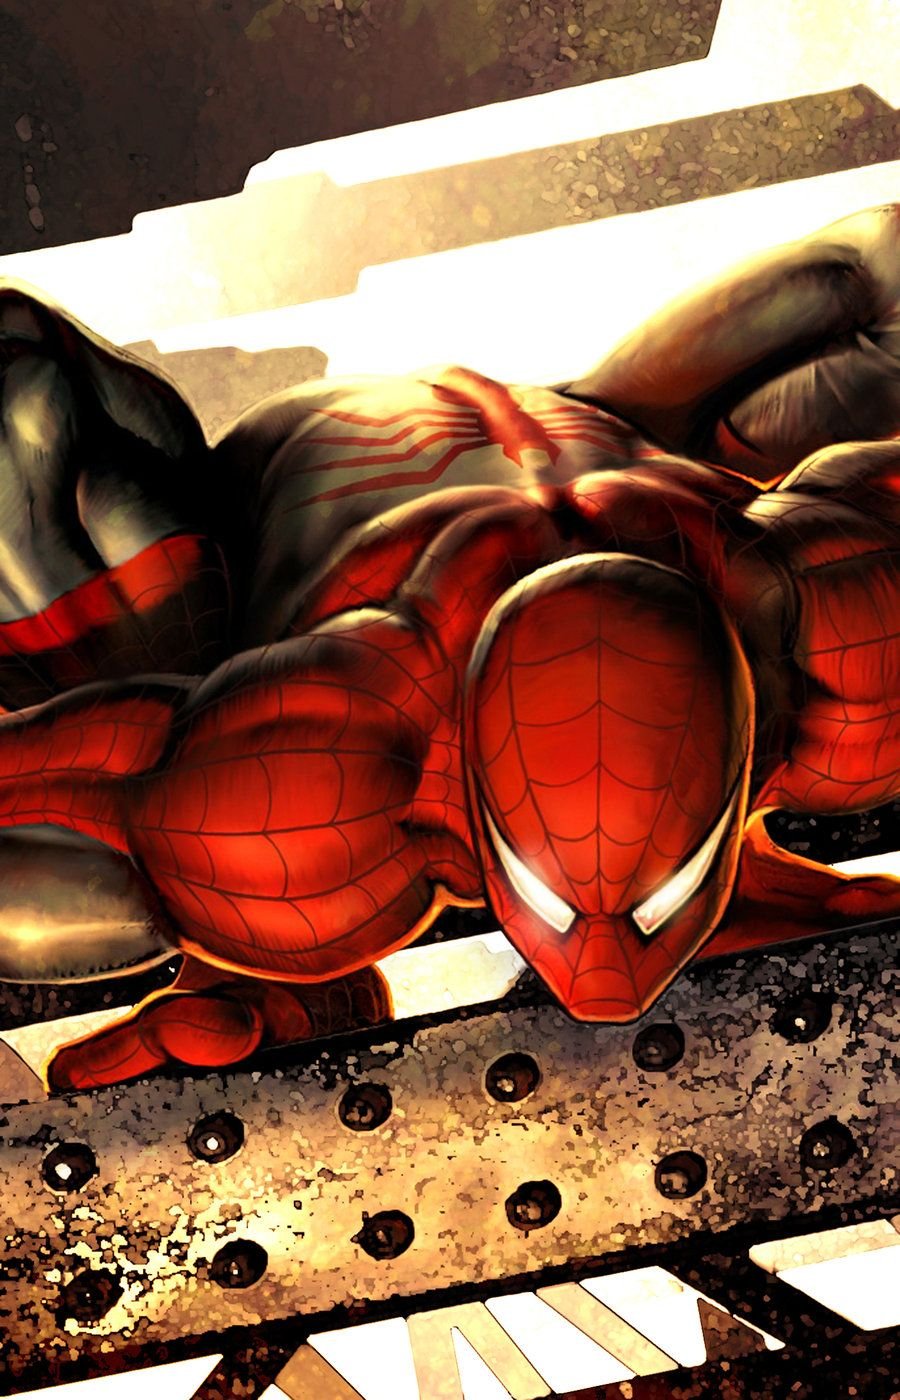 Spiderman Wallpaper 840 X 600